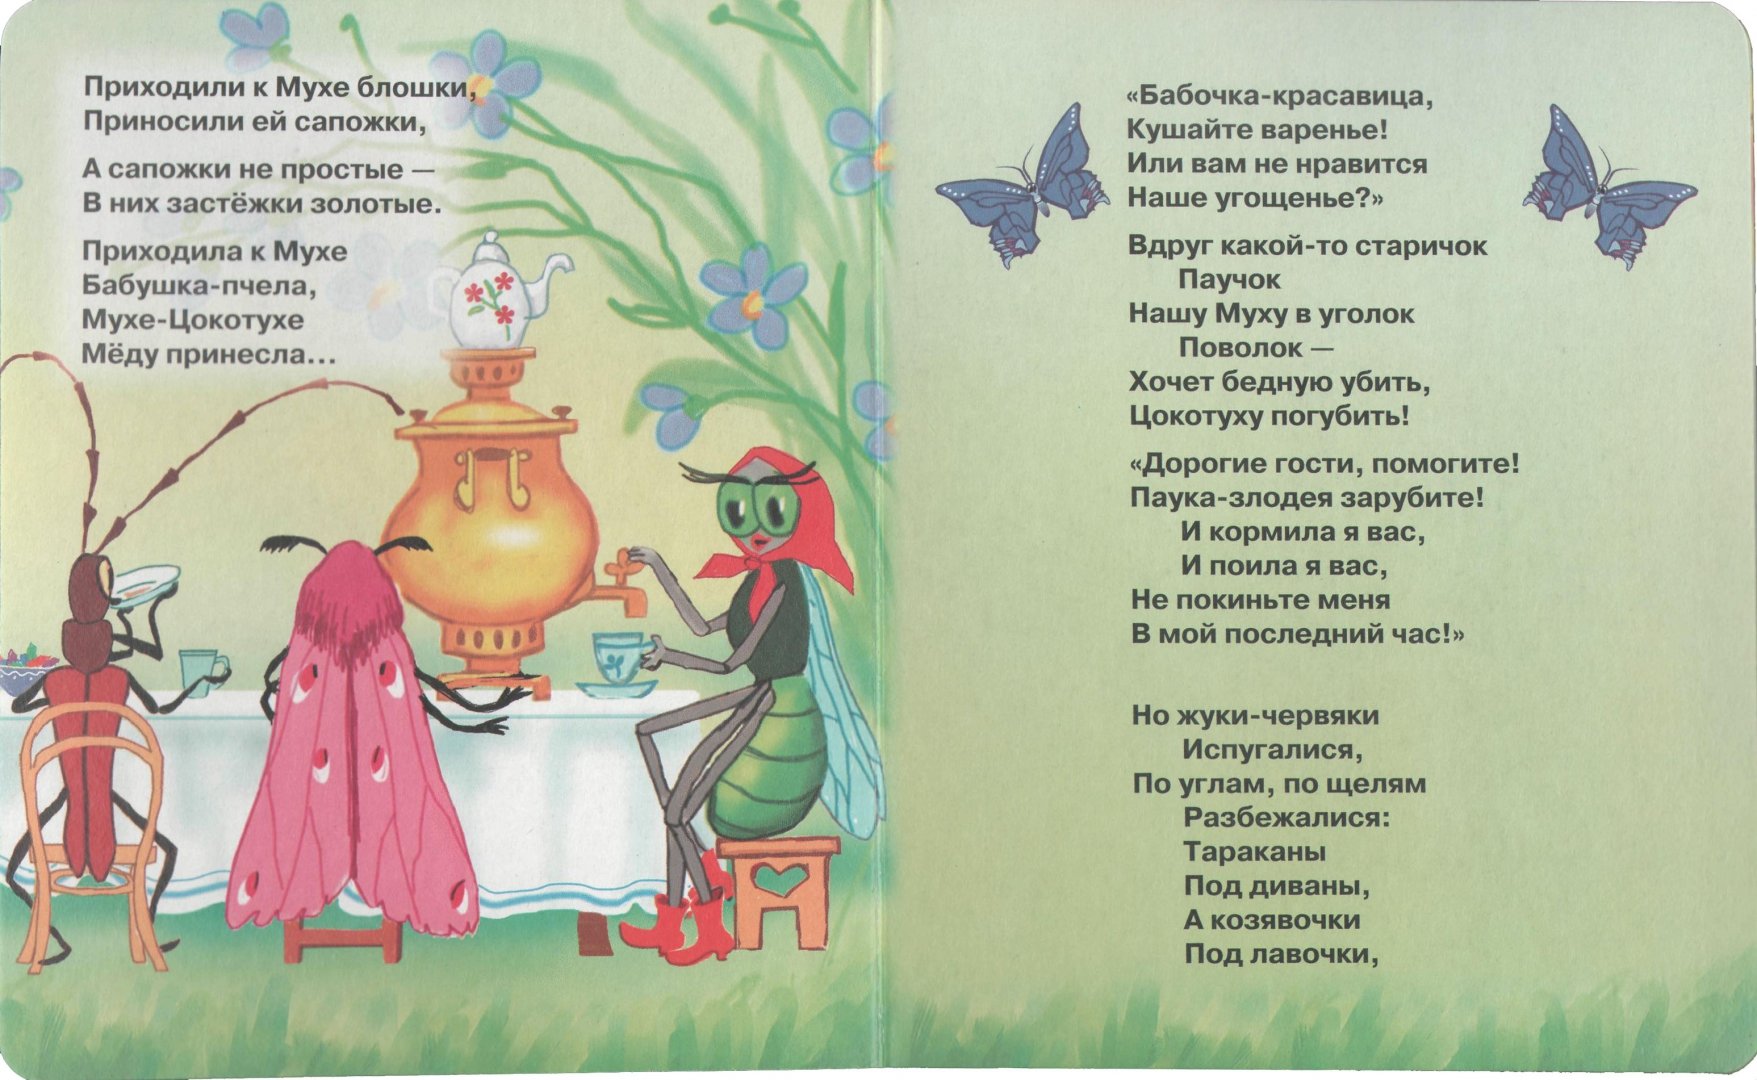 Сказки корнея чуковского: читать, список сказок для детей онлайн бесплатно - стихотворные сказки на рустих